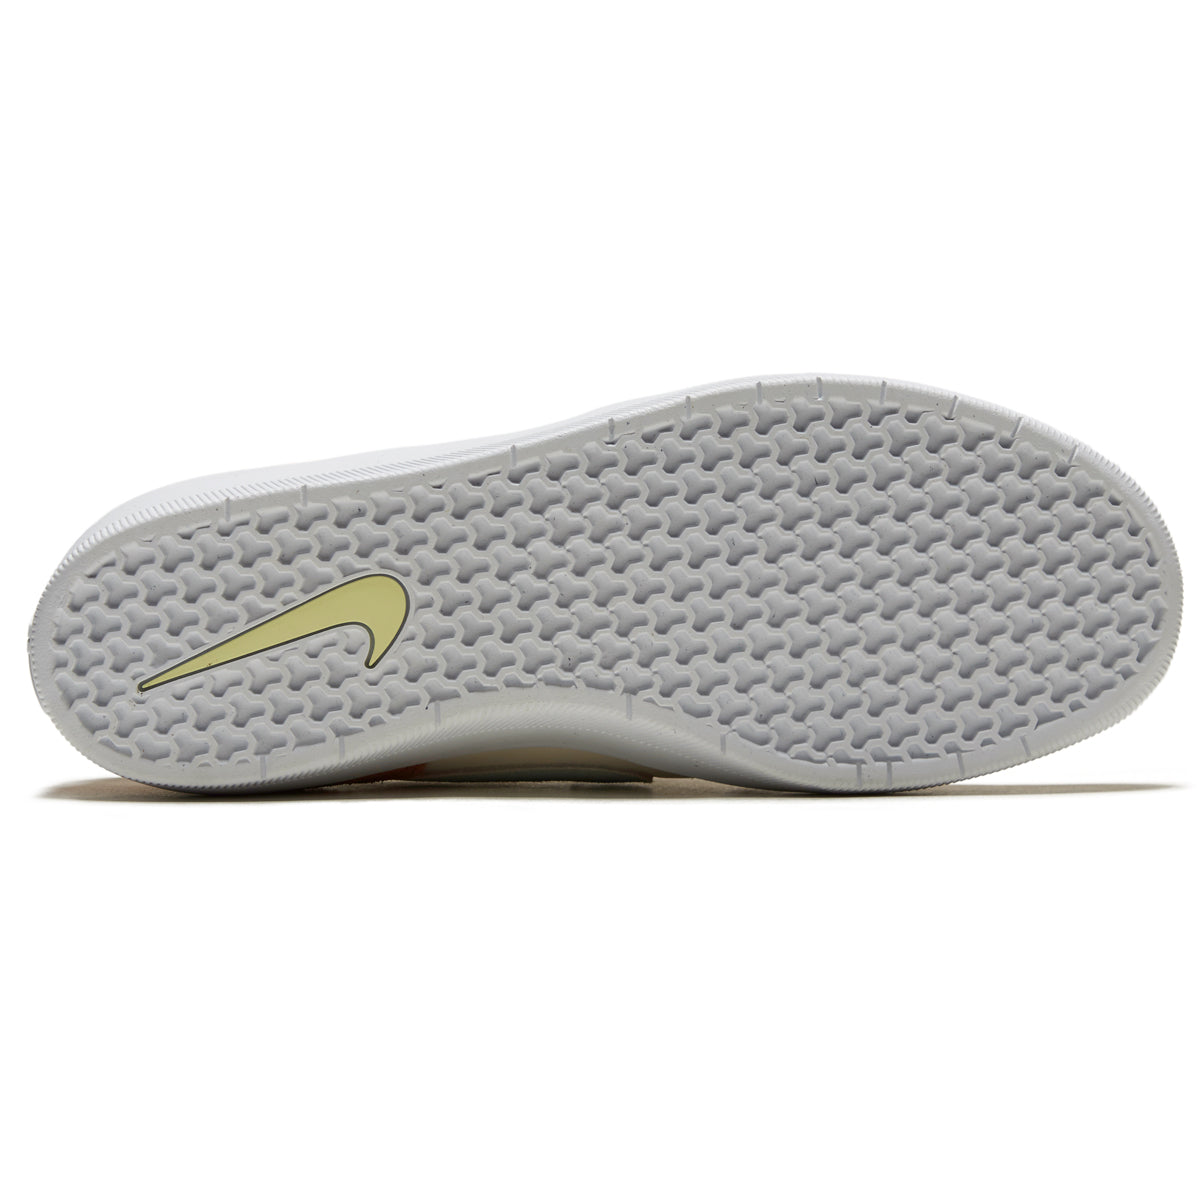 Nike SB Force 58 Shoes - Pale Ivory/Jade Ice/White/Hemp image 4